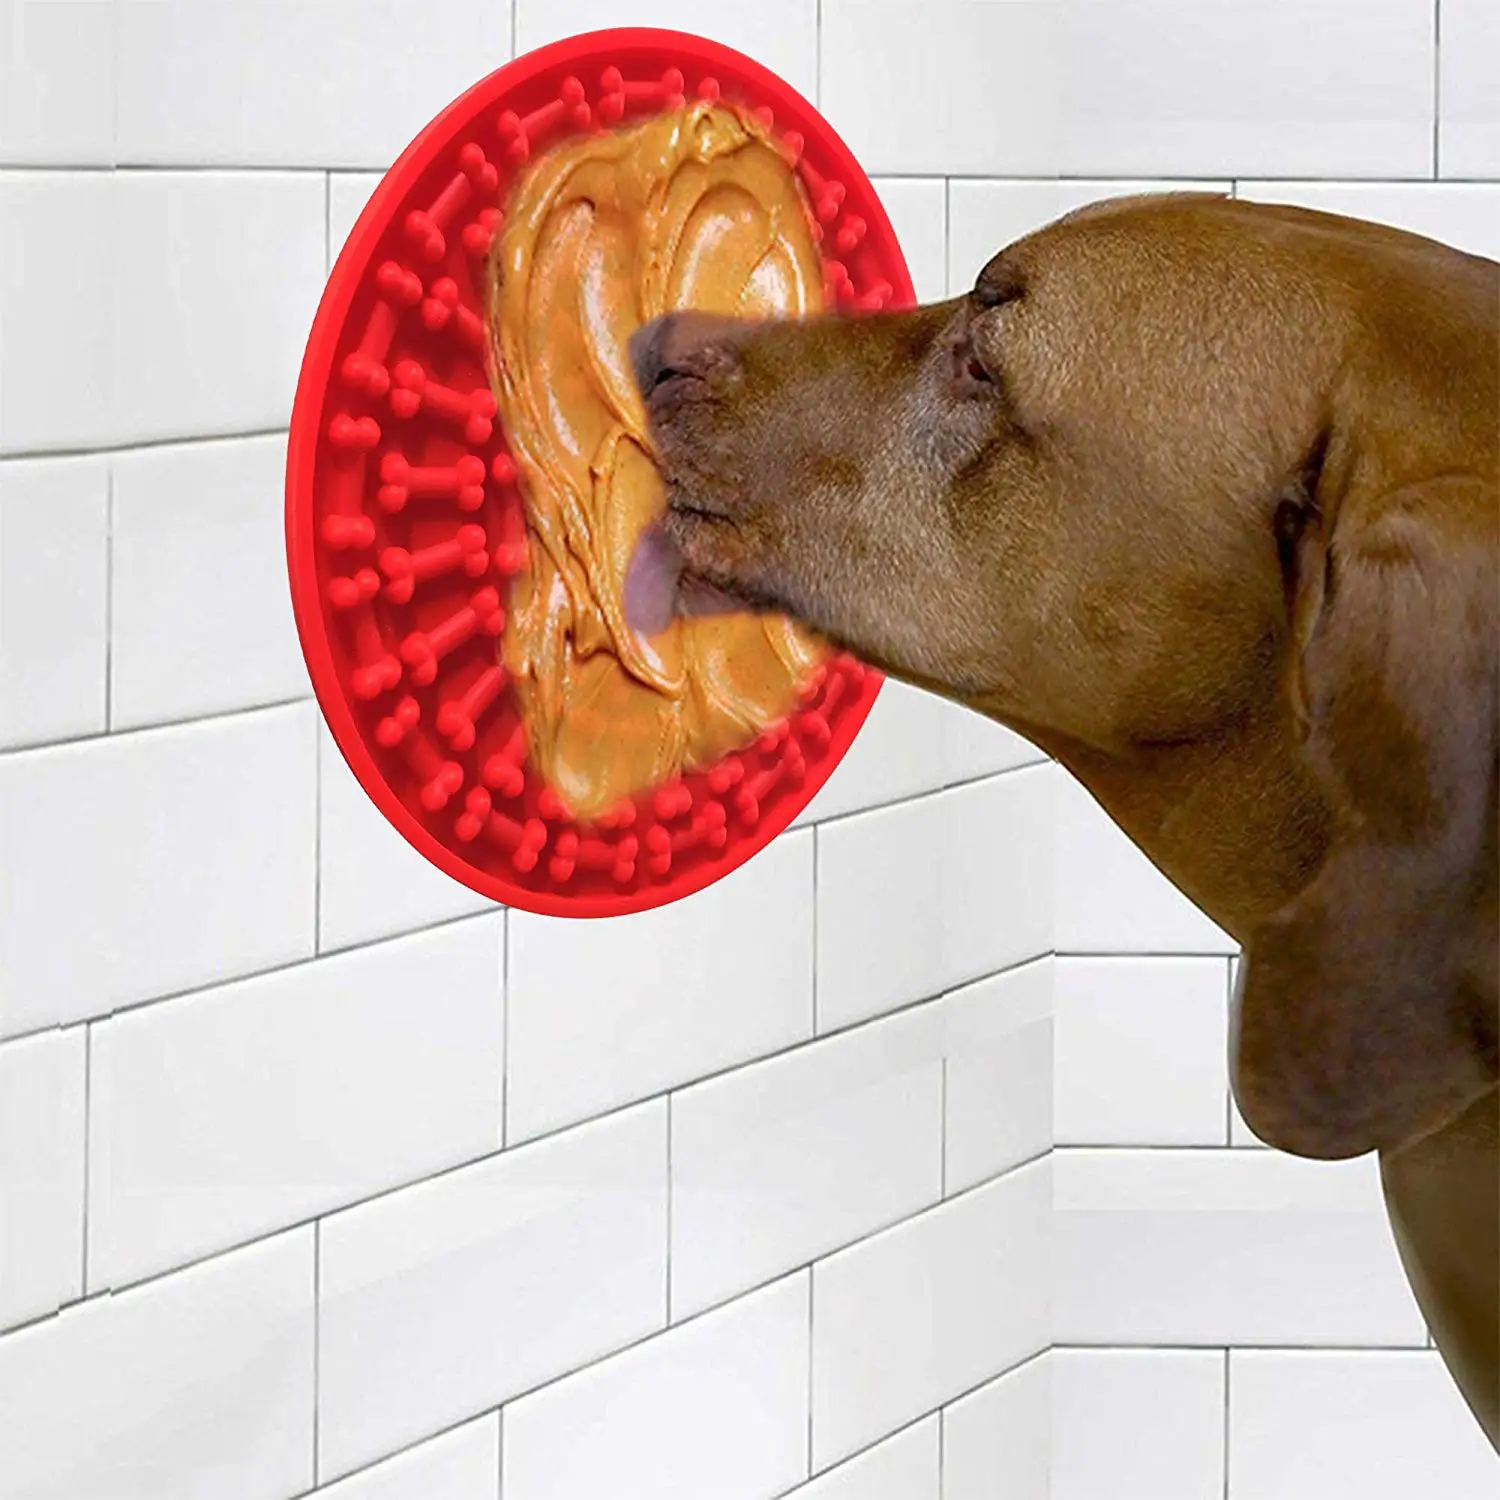 Кормление Собак лизать коврик для распространения арахисовое масло для ванны отвлечение легко Уход за лошадьми в душ ванна раковина игрушки Pet ручная стирка